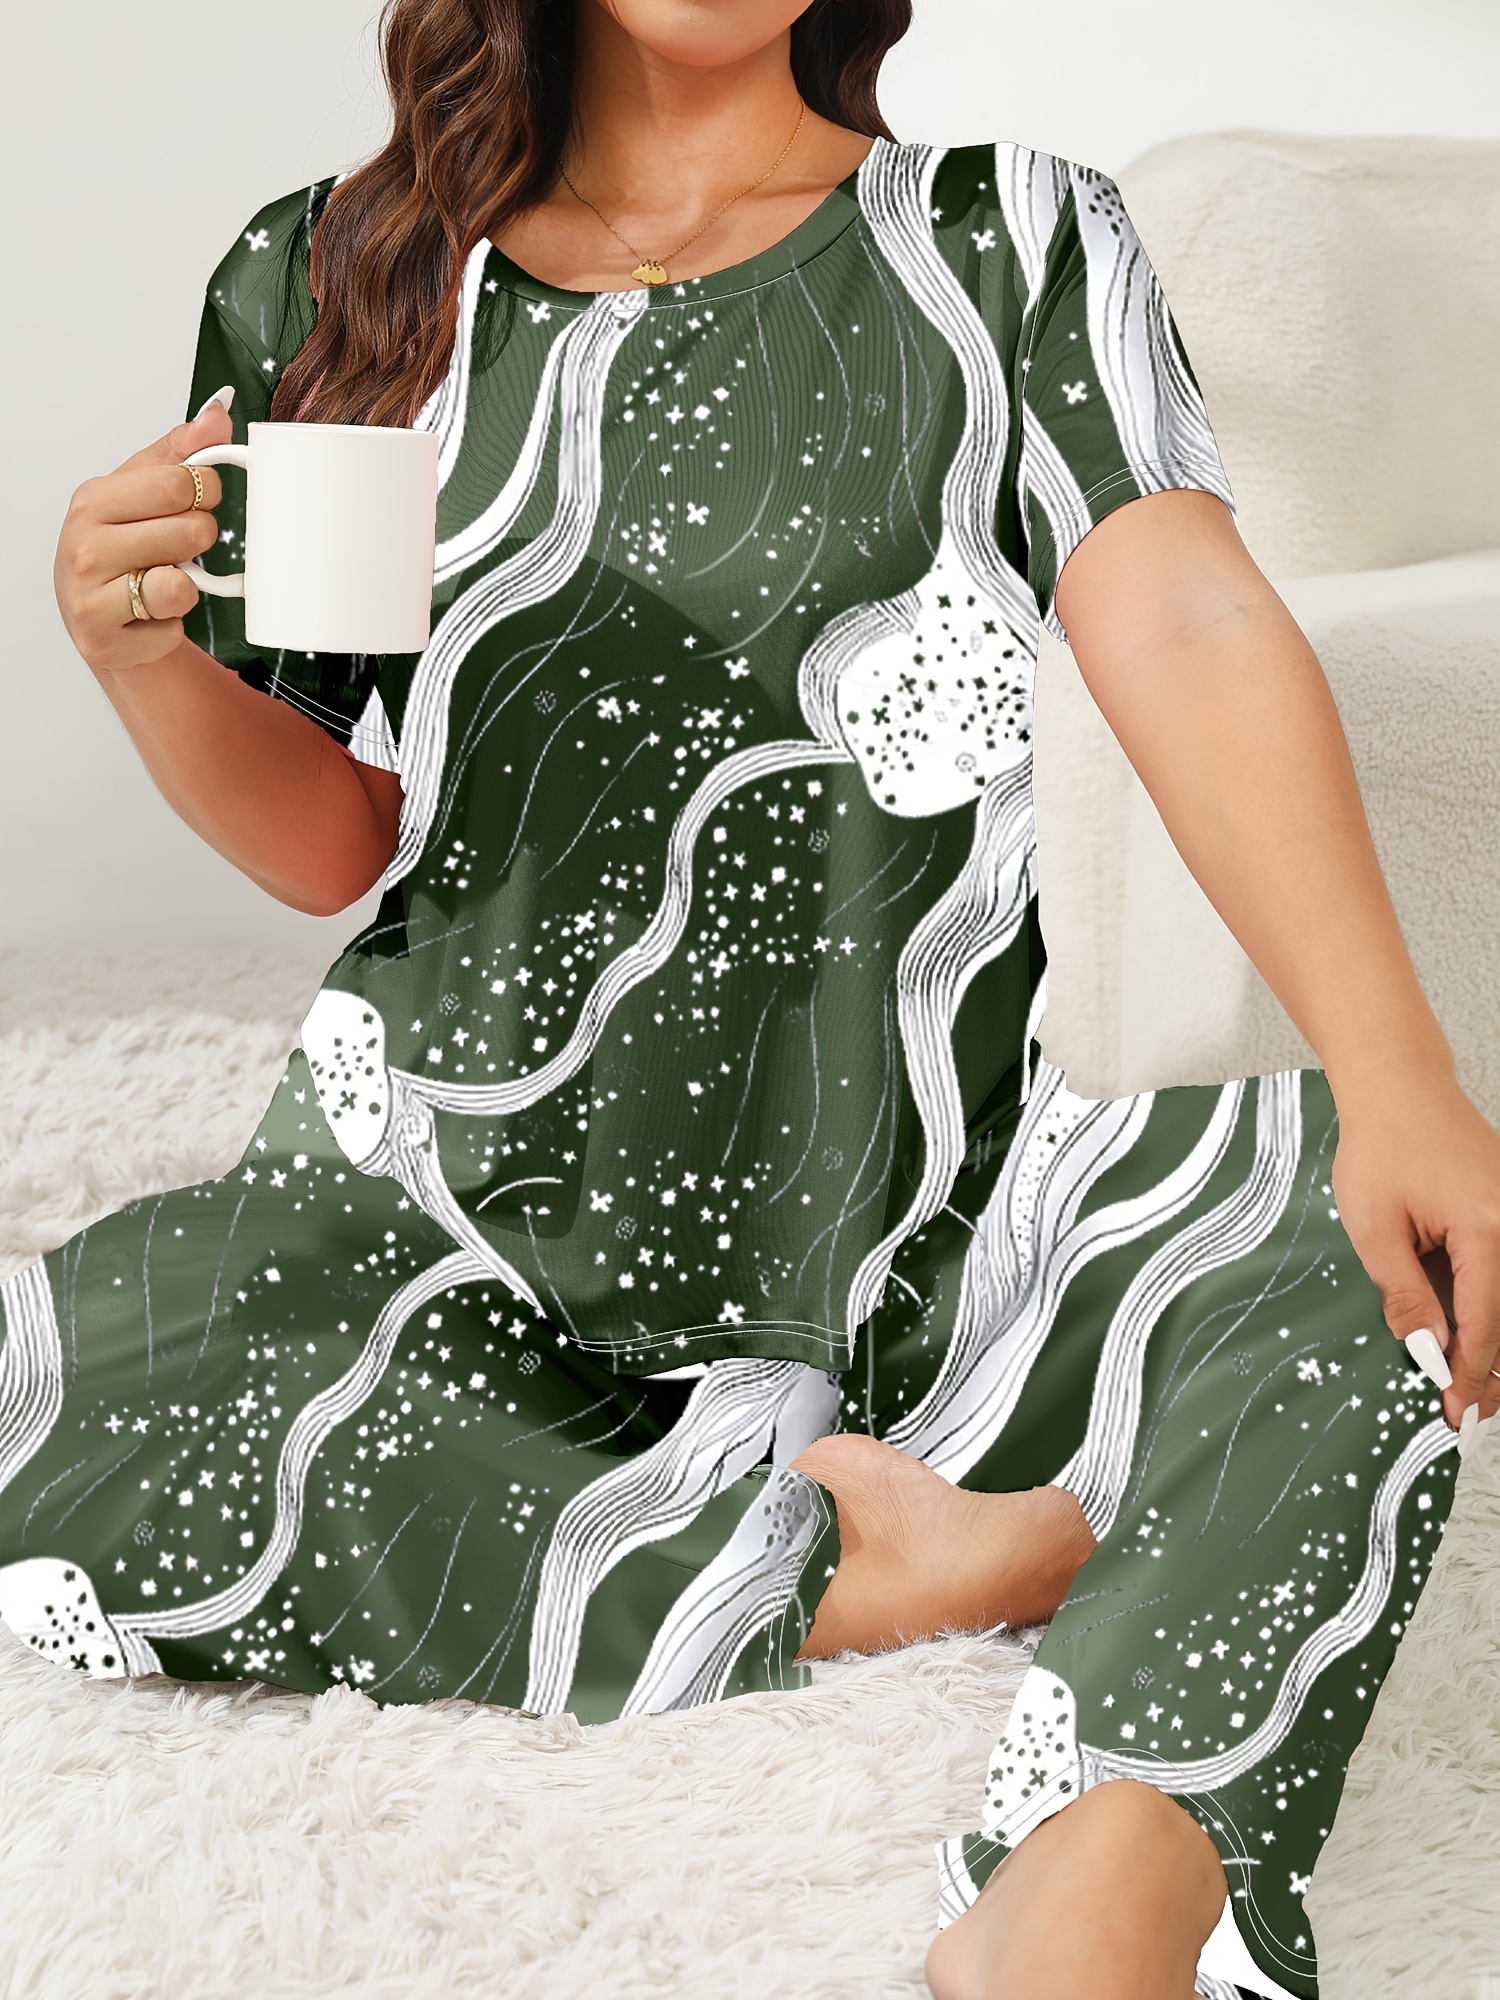 Womens Pajamas 2 Piece Pyjamas Loungewear Sleepwear Nightgown Vegetables  Pattern